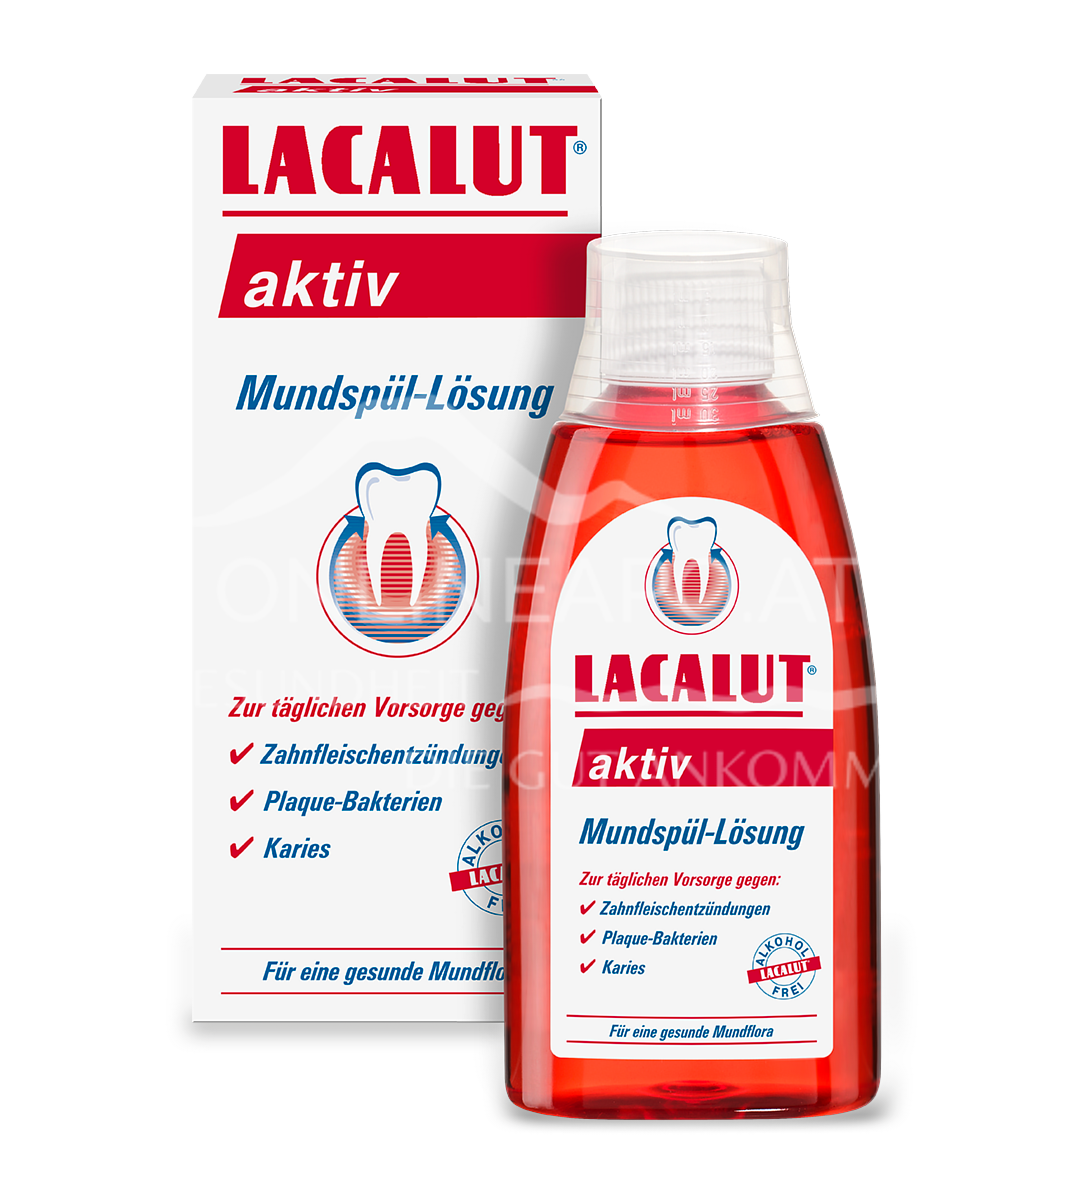 LACALUT® aktiv Mundspül-Lösung